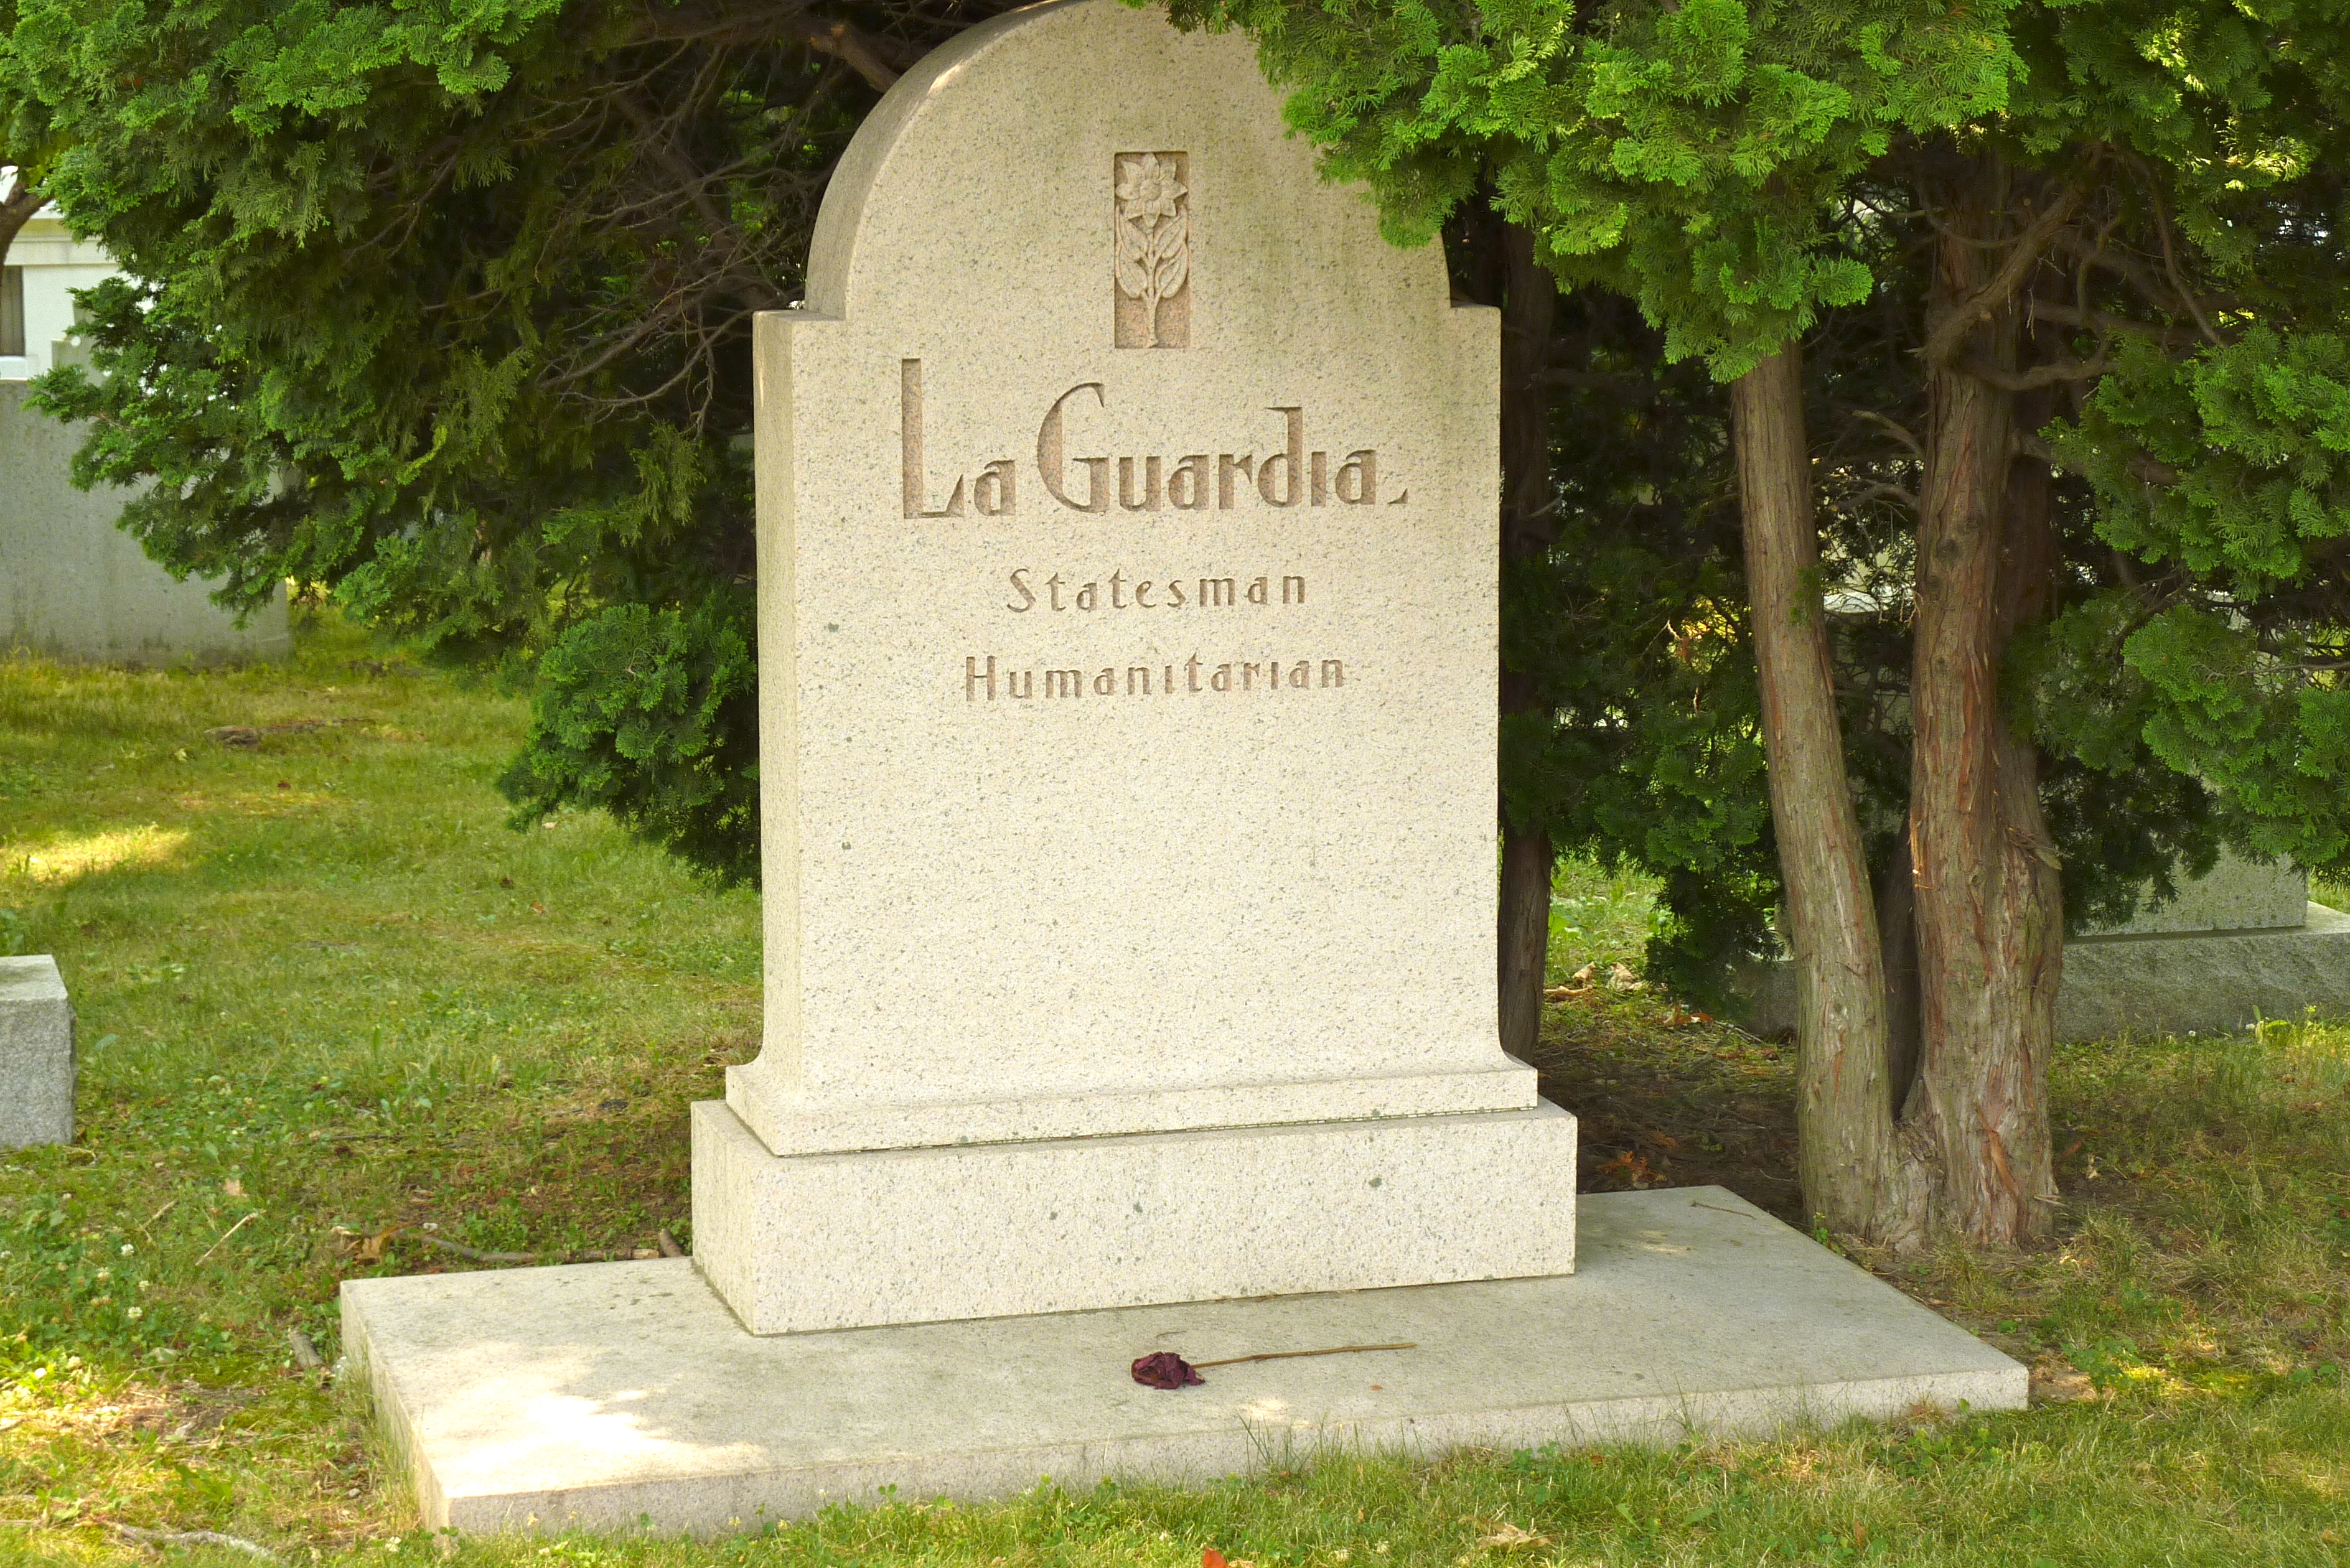 Fiorella LaGuardias tombstone